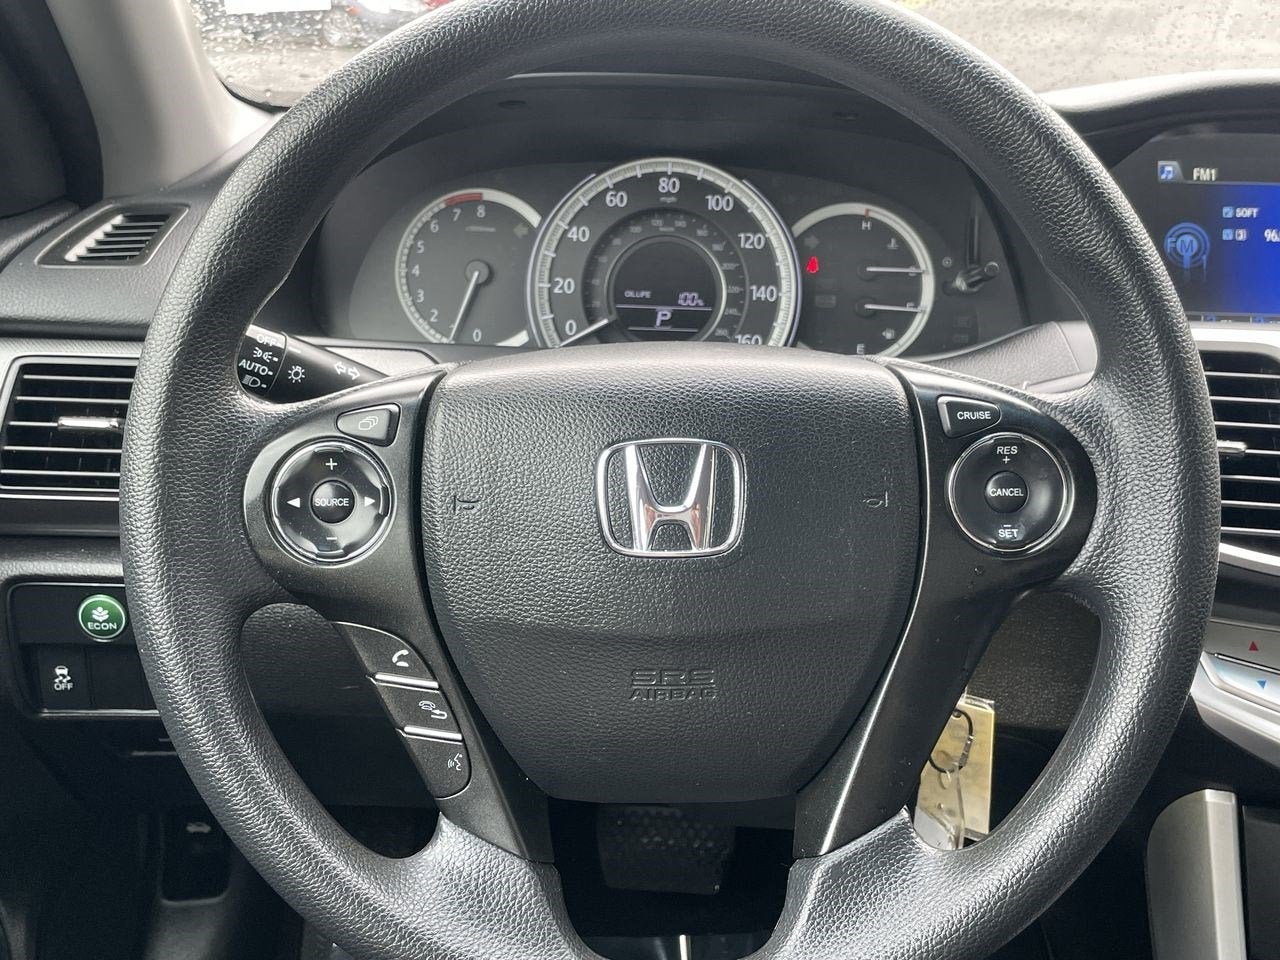 2015 Honda Accord Sedan LX